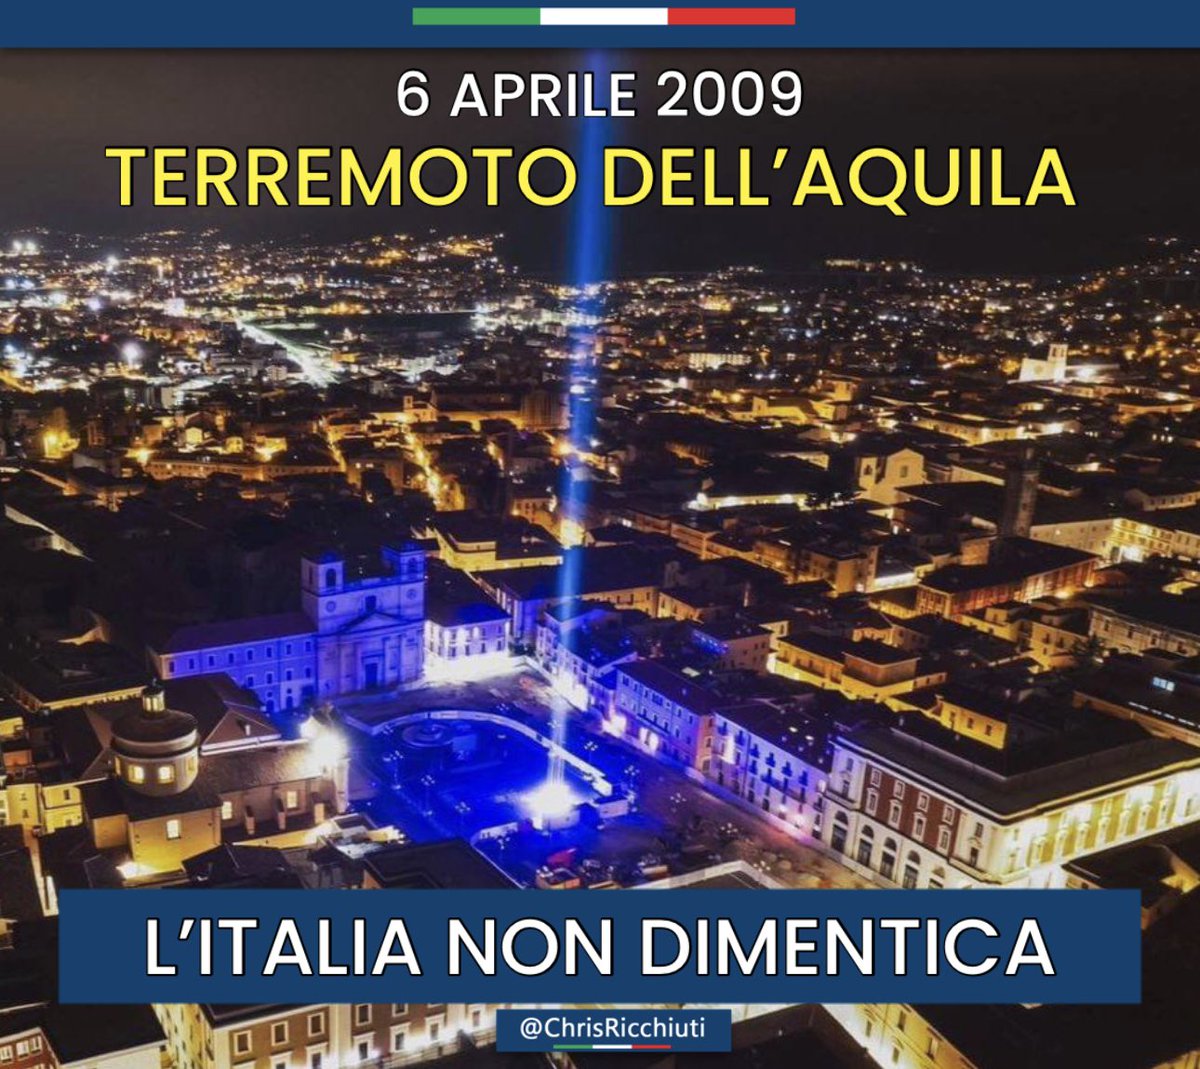 #6aprile
In ricordo di chi ha perso la vita nel terremoto dell'Aquila nel 2009.
L’Italia non dimentica ❤️🇮🇹
#6aprile2009 #terremoto #LAquila